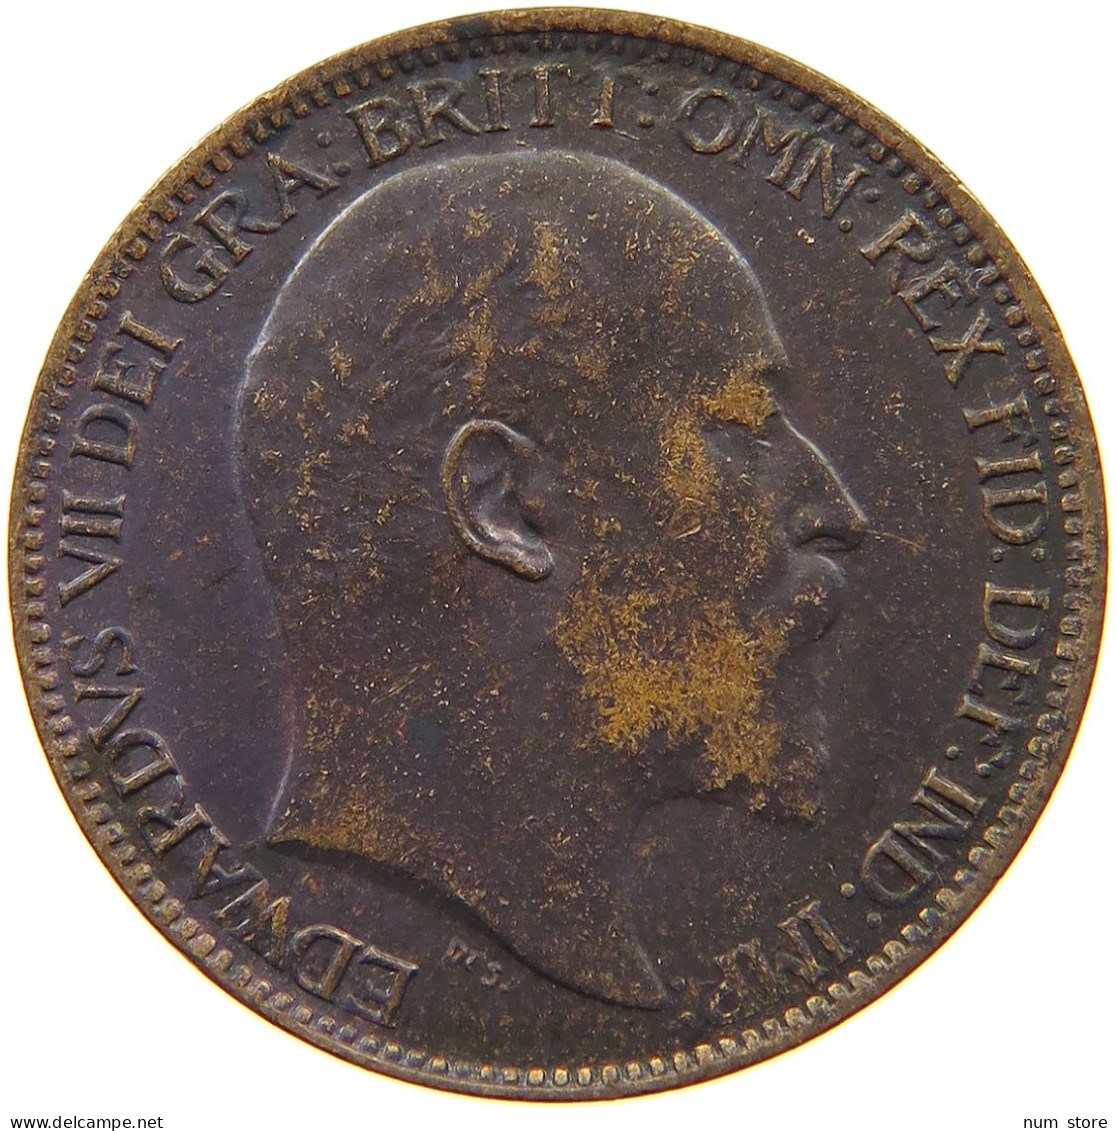 GREAT BRITAIN FARTHING 1902 Edward VII., 1901 - 1910 #s055 0125 - B. 1 Farthing